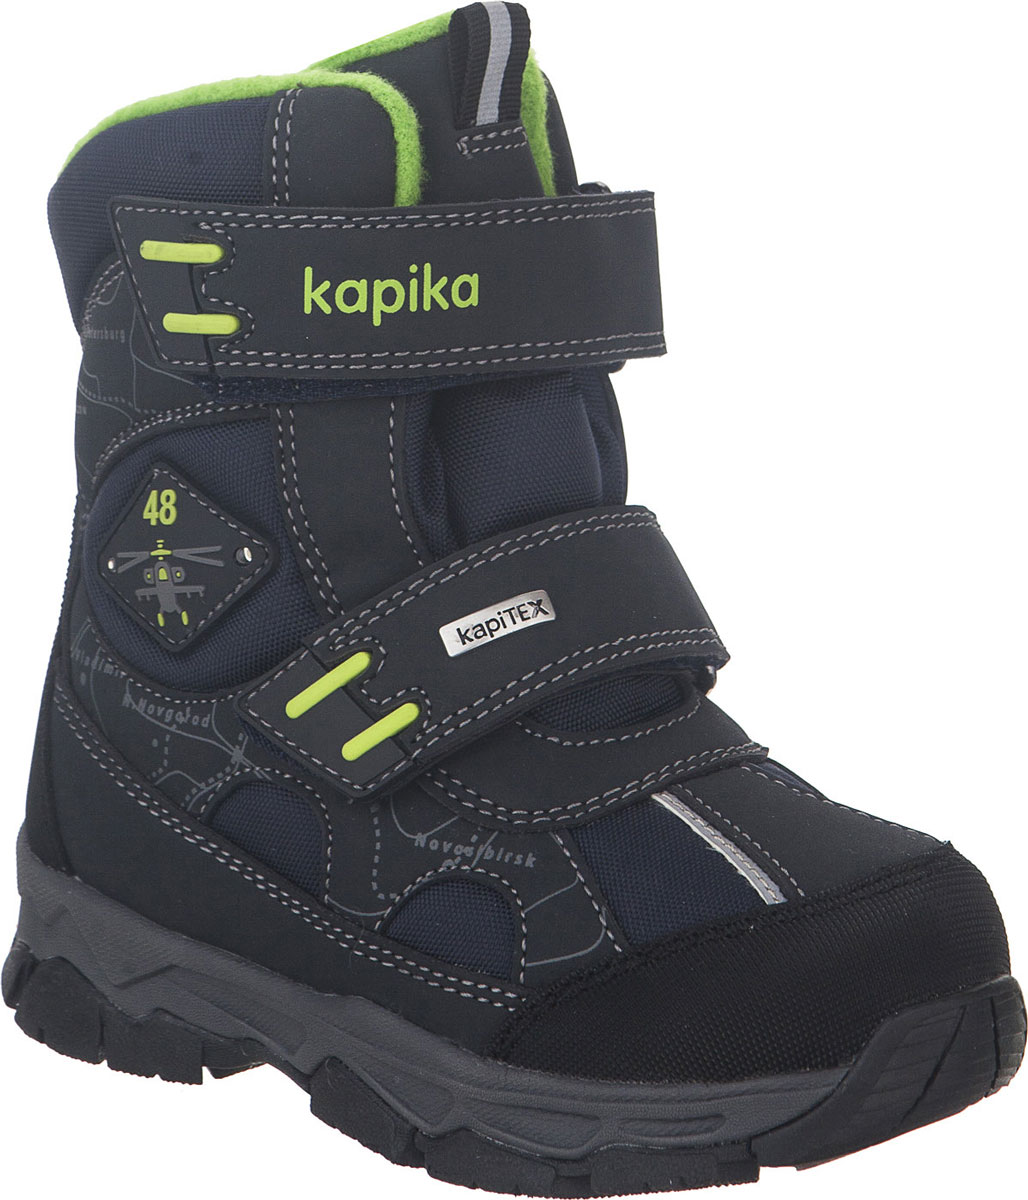 Ботинки для мальчика Kapika, цвет: темно-синий, салатовый. 42229-1. Размер 31